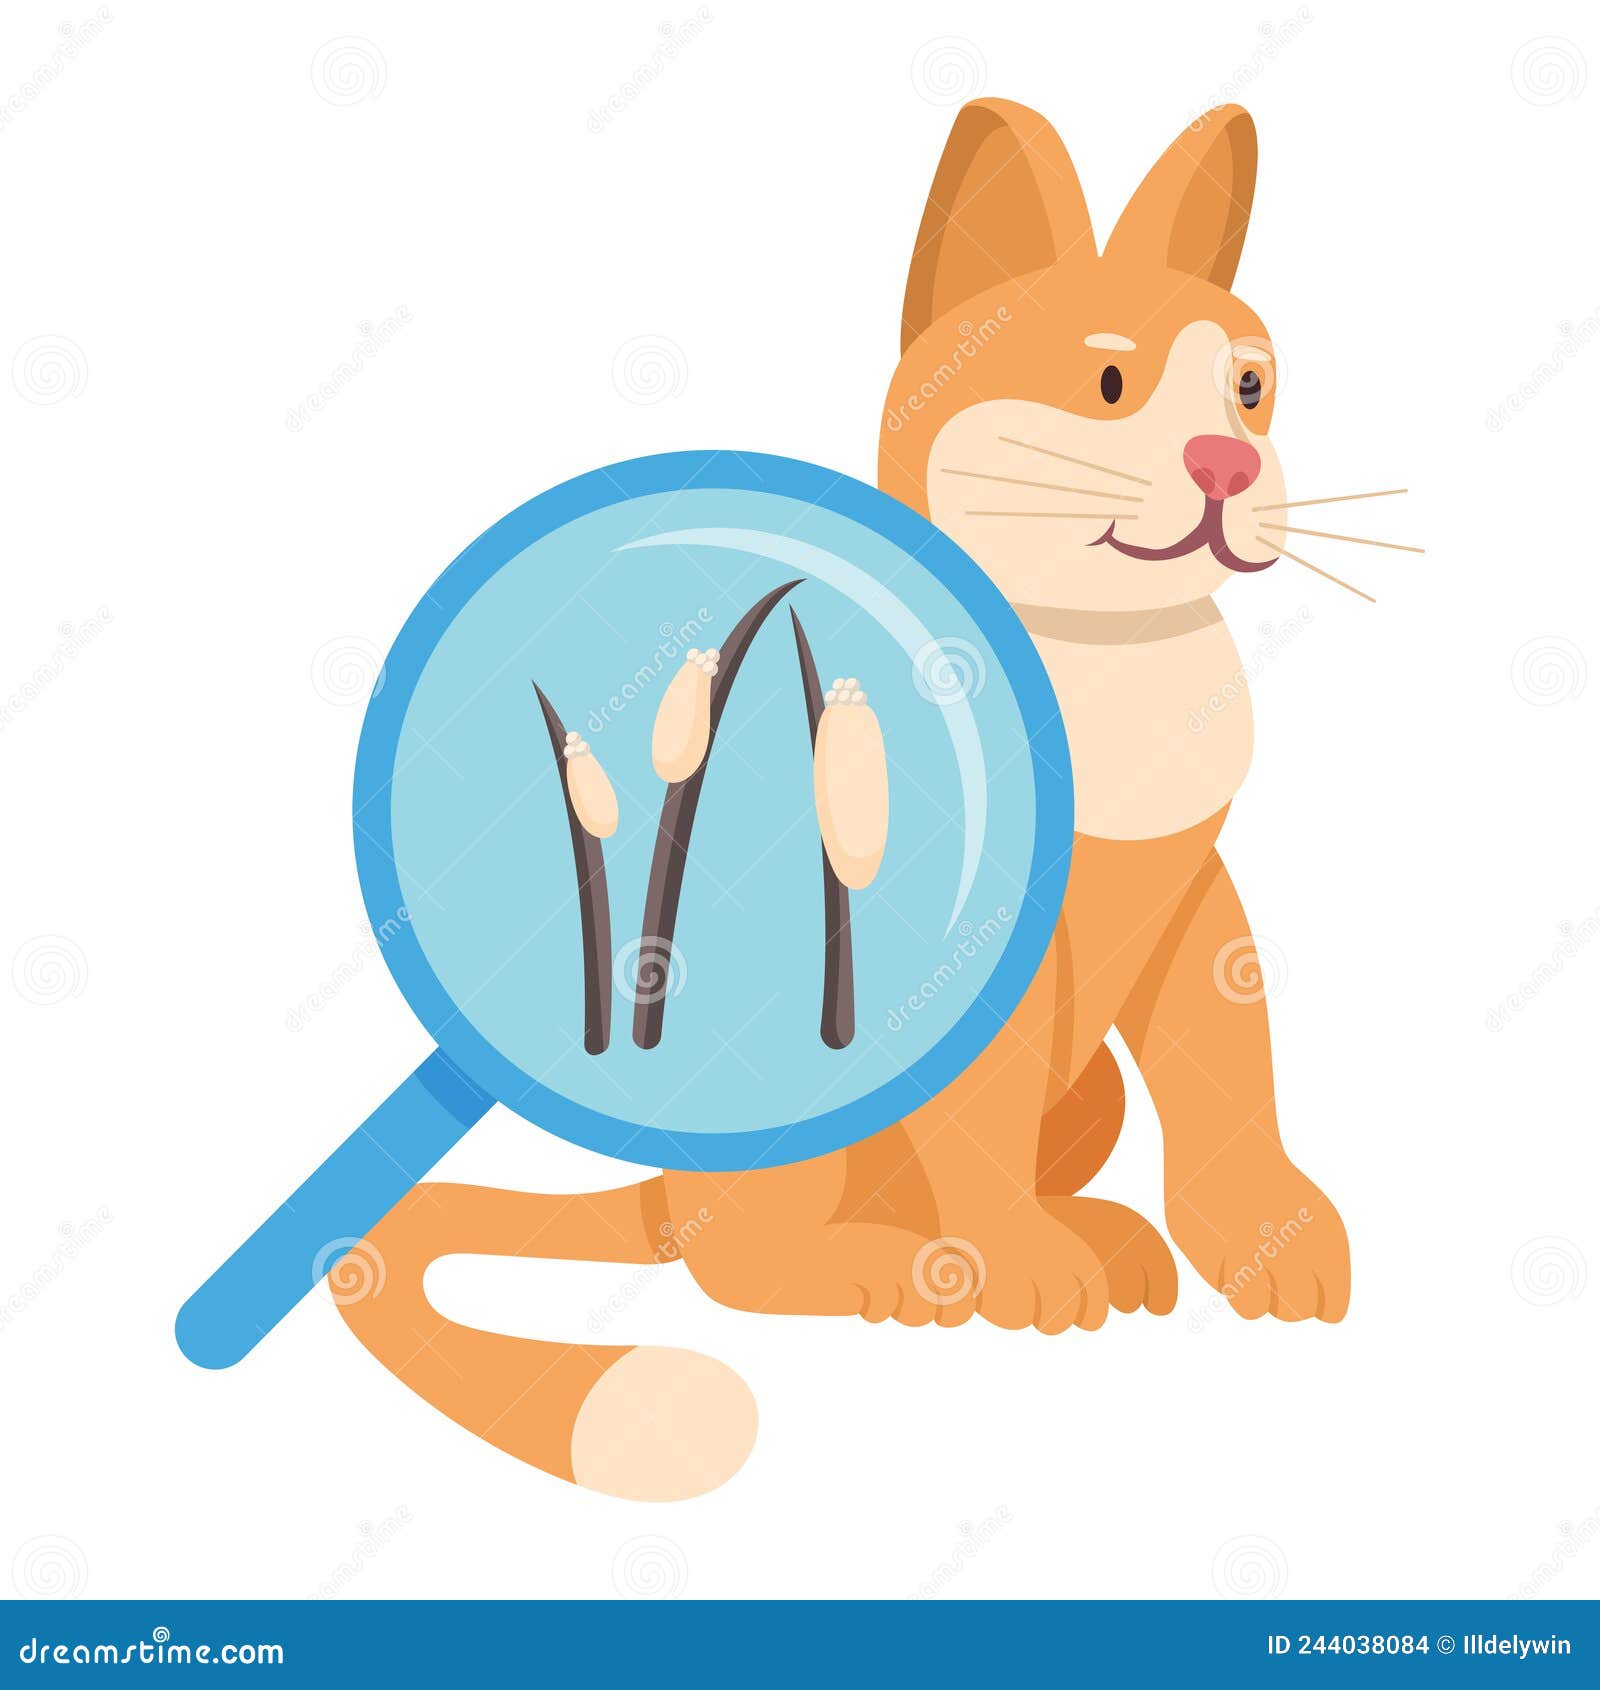 Cat Tick Fur Stock Illustrations – 45 Cat Tick Fur Stock Illustrations,  Vectors & Clipart - Dreamstime